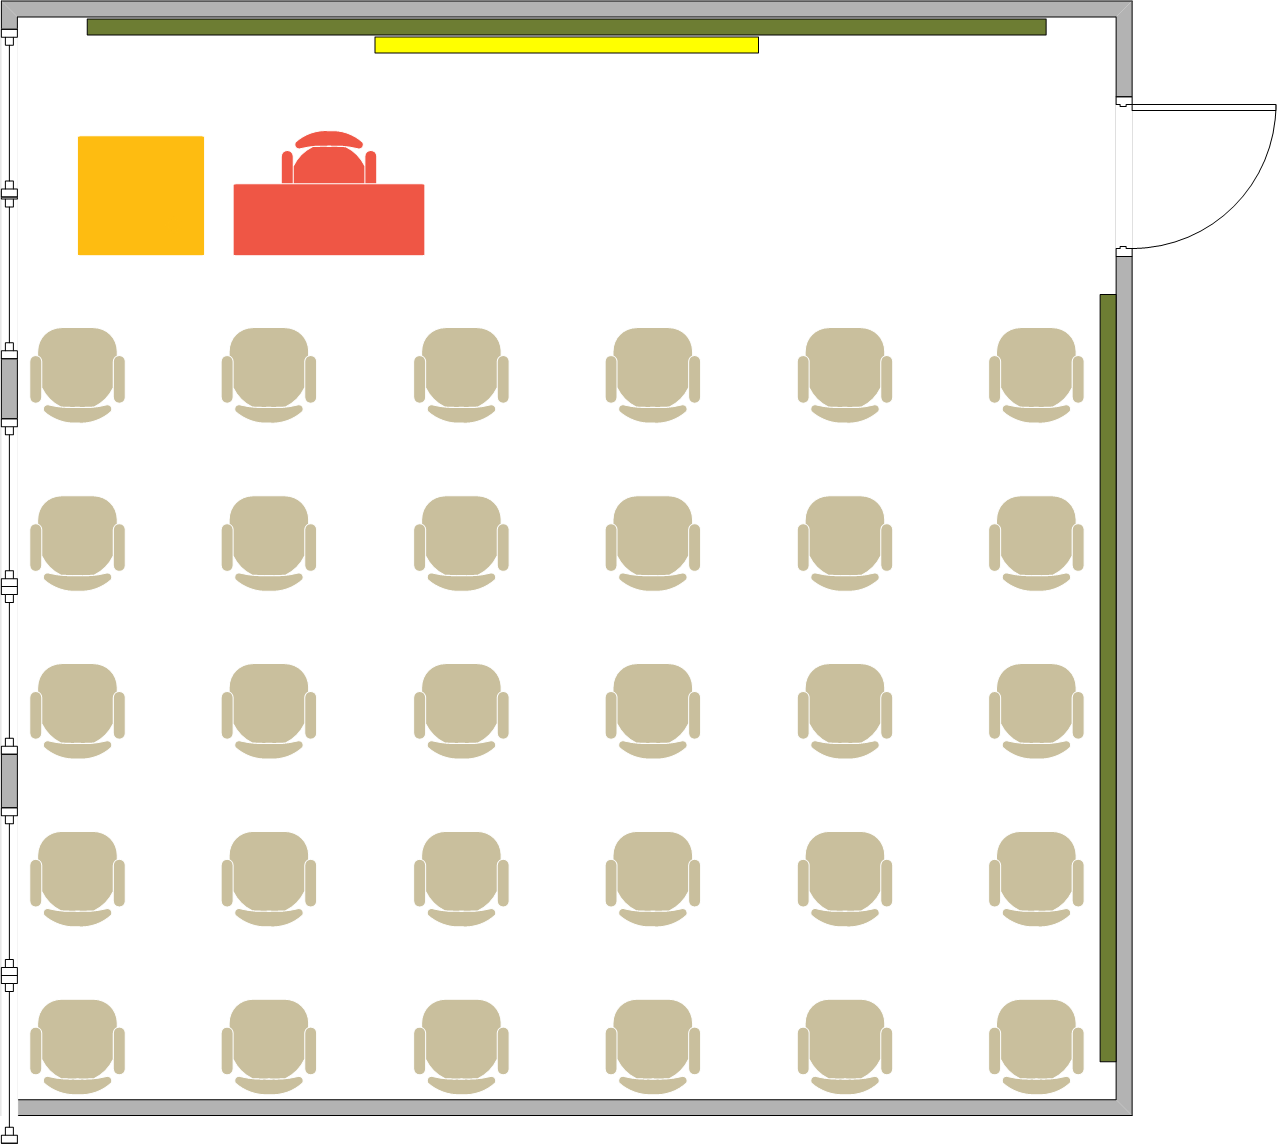 Girvetz Hall - 2120 Seating Chart